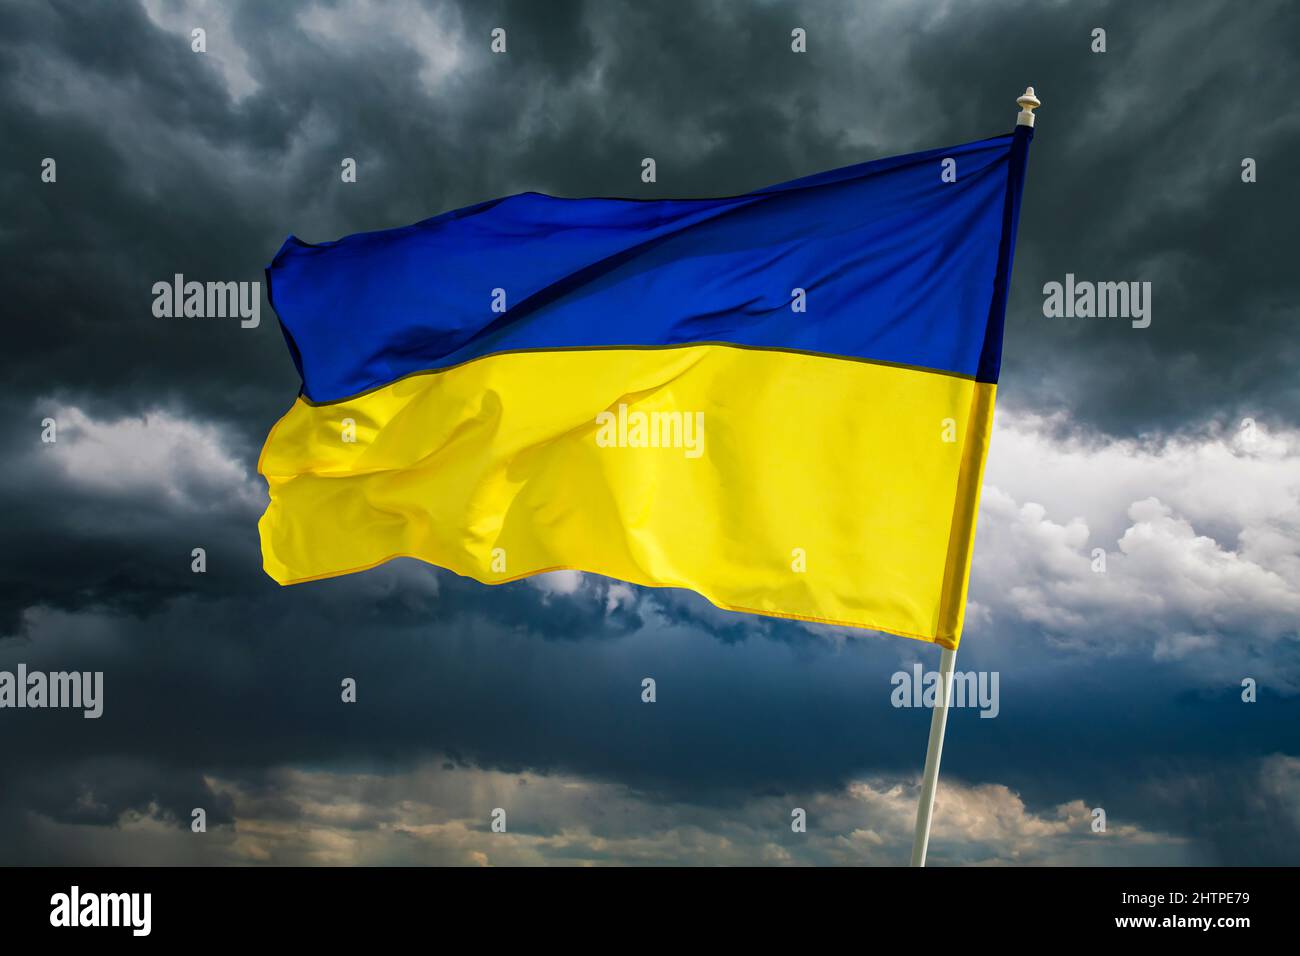 Ukrainische blaue und gelbe bicolor Nationalflagge auf dunklem bewölktem dramatischem Himmel Hintergrund. Ukraine kämpft für Freiheit Konzept Stockfoto